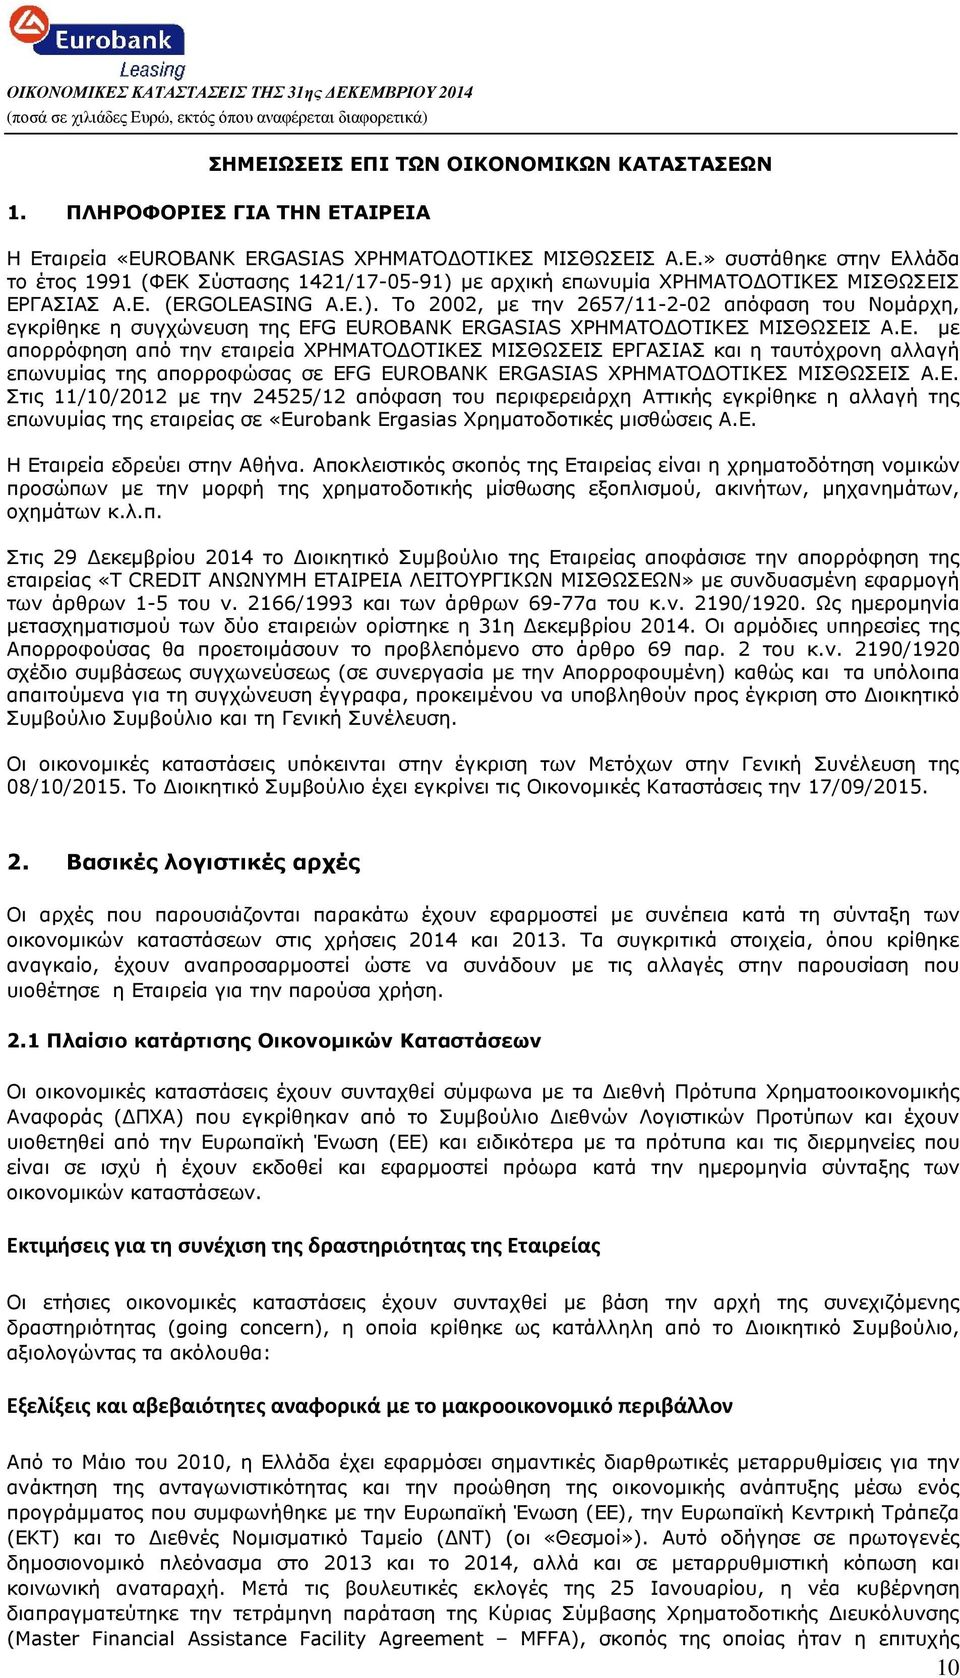 Ε. Στις 11/10/2012 µε την 24525/12 απόφαση του περιφερειάρχη Αττικής εγκρίθηκε η αλλαγή της επωνυµίας της εταιρείας σε «Eurobank Ergasias Χρηµατοδοτικές µισθώσεις Α.Ε. Η Εταιρεία εδρεύει στην Αθήνα.